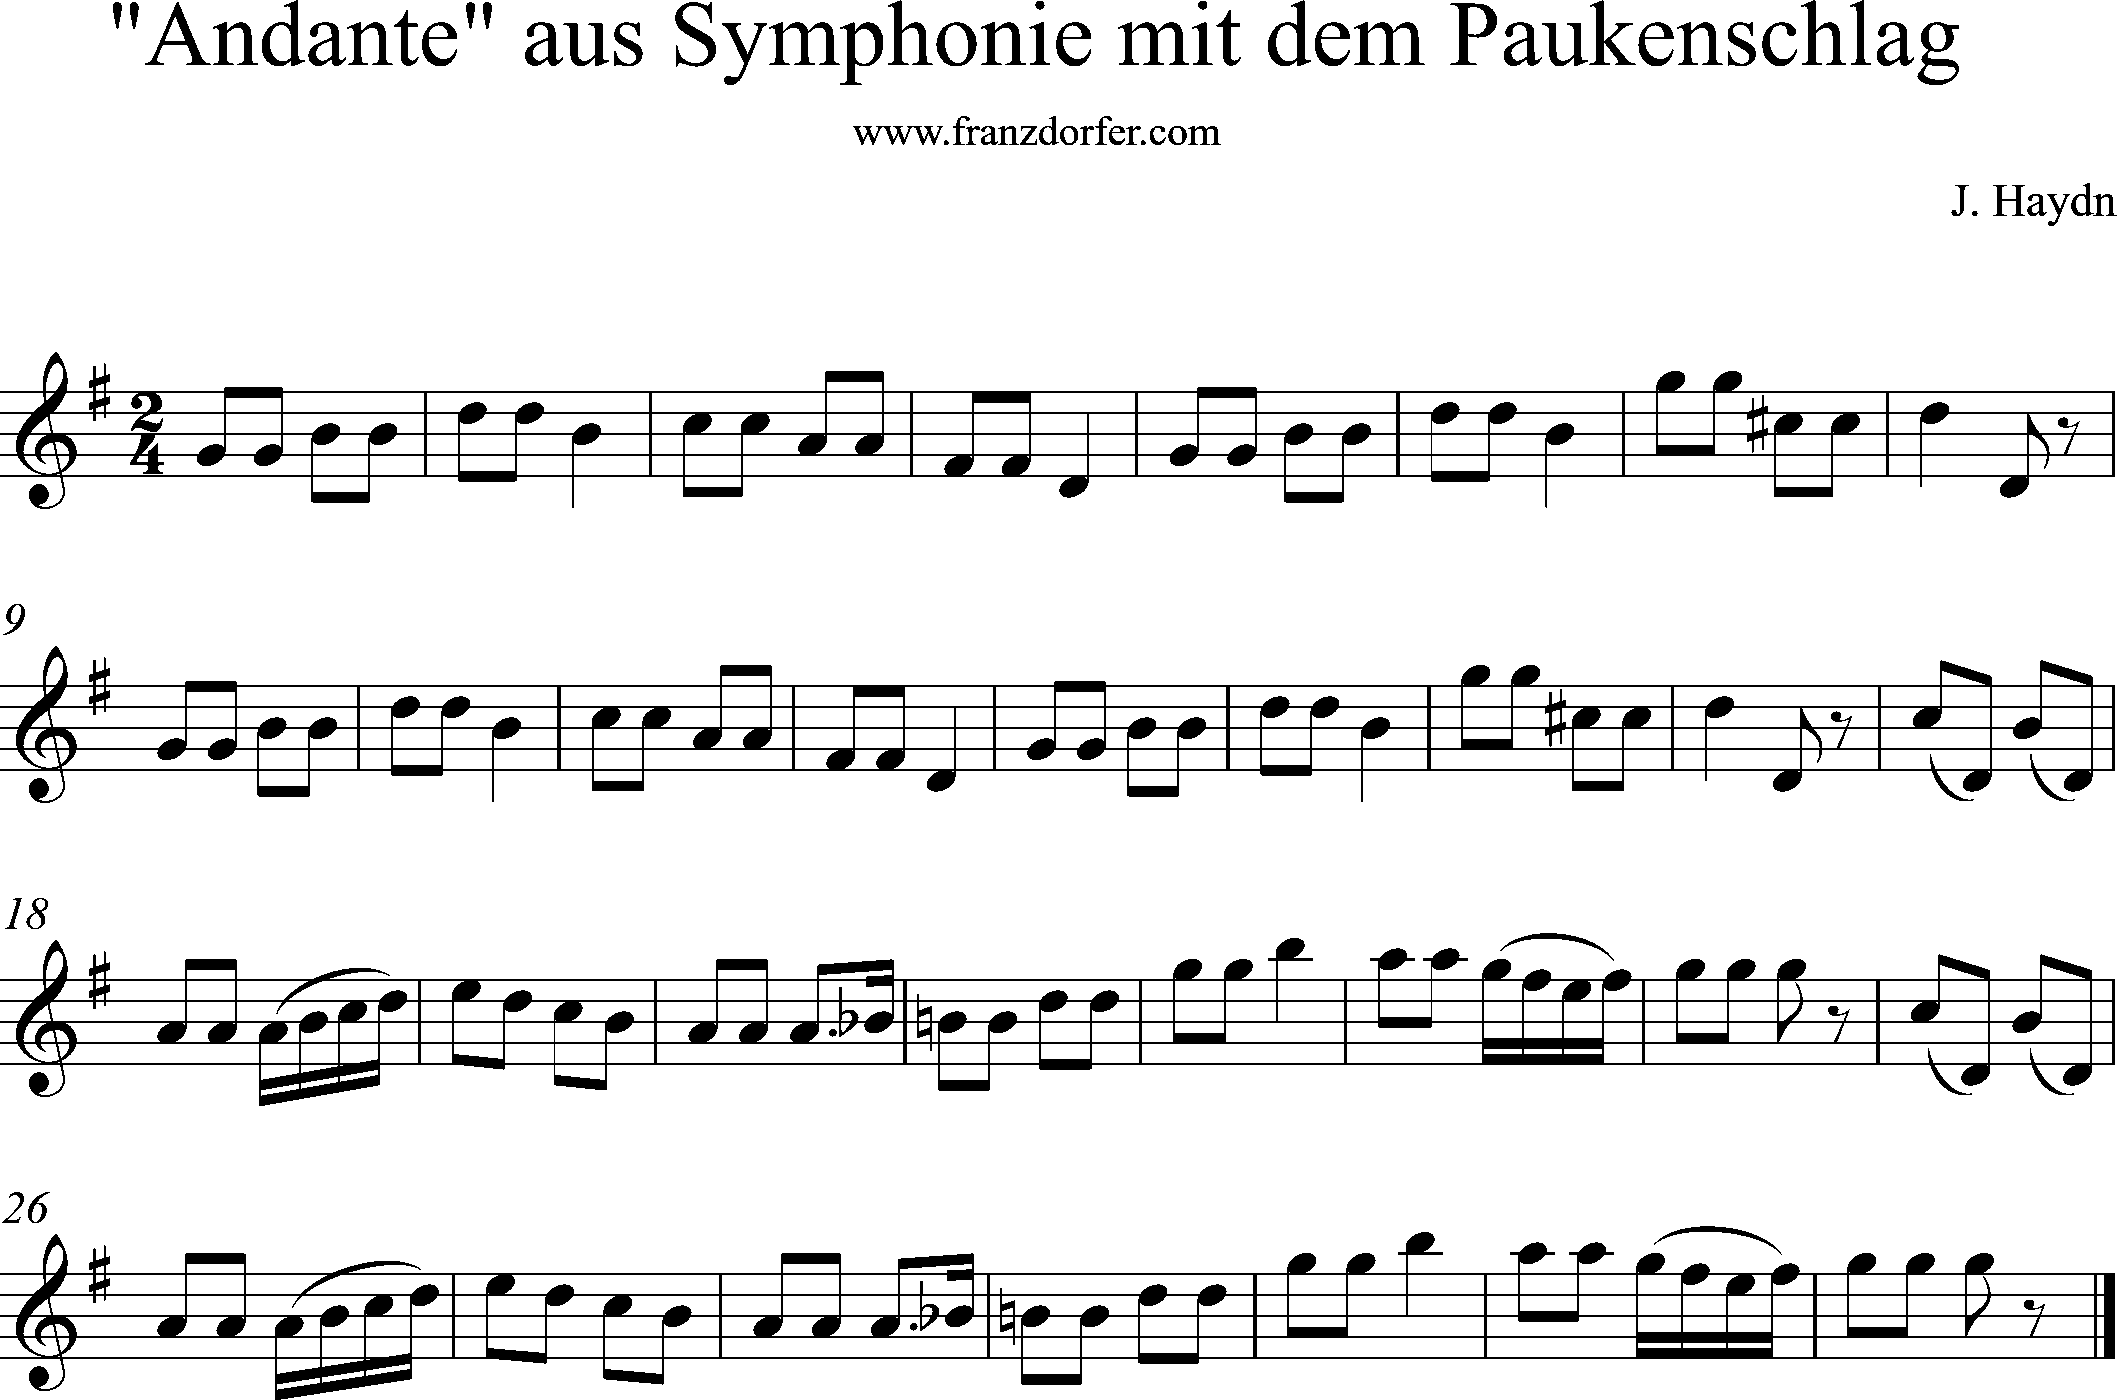 Andante, Sinfonie mit dem Paukenschlag, G-Dur